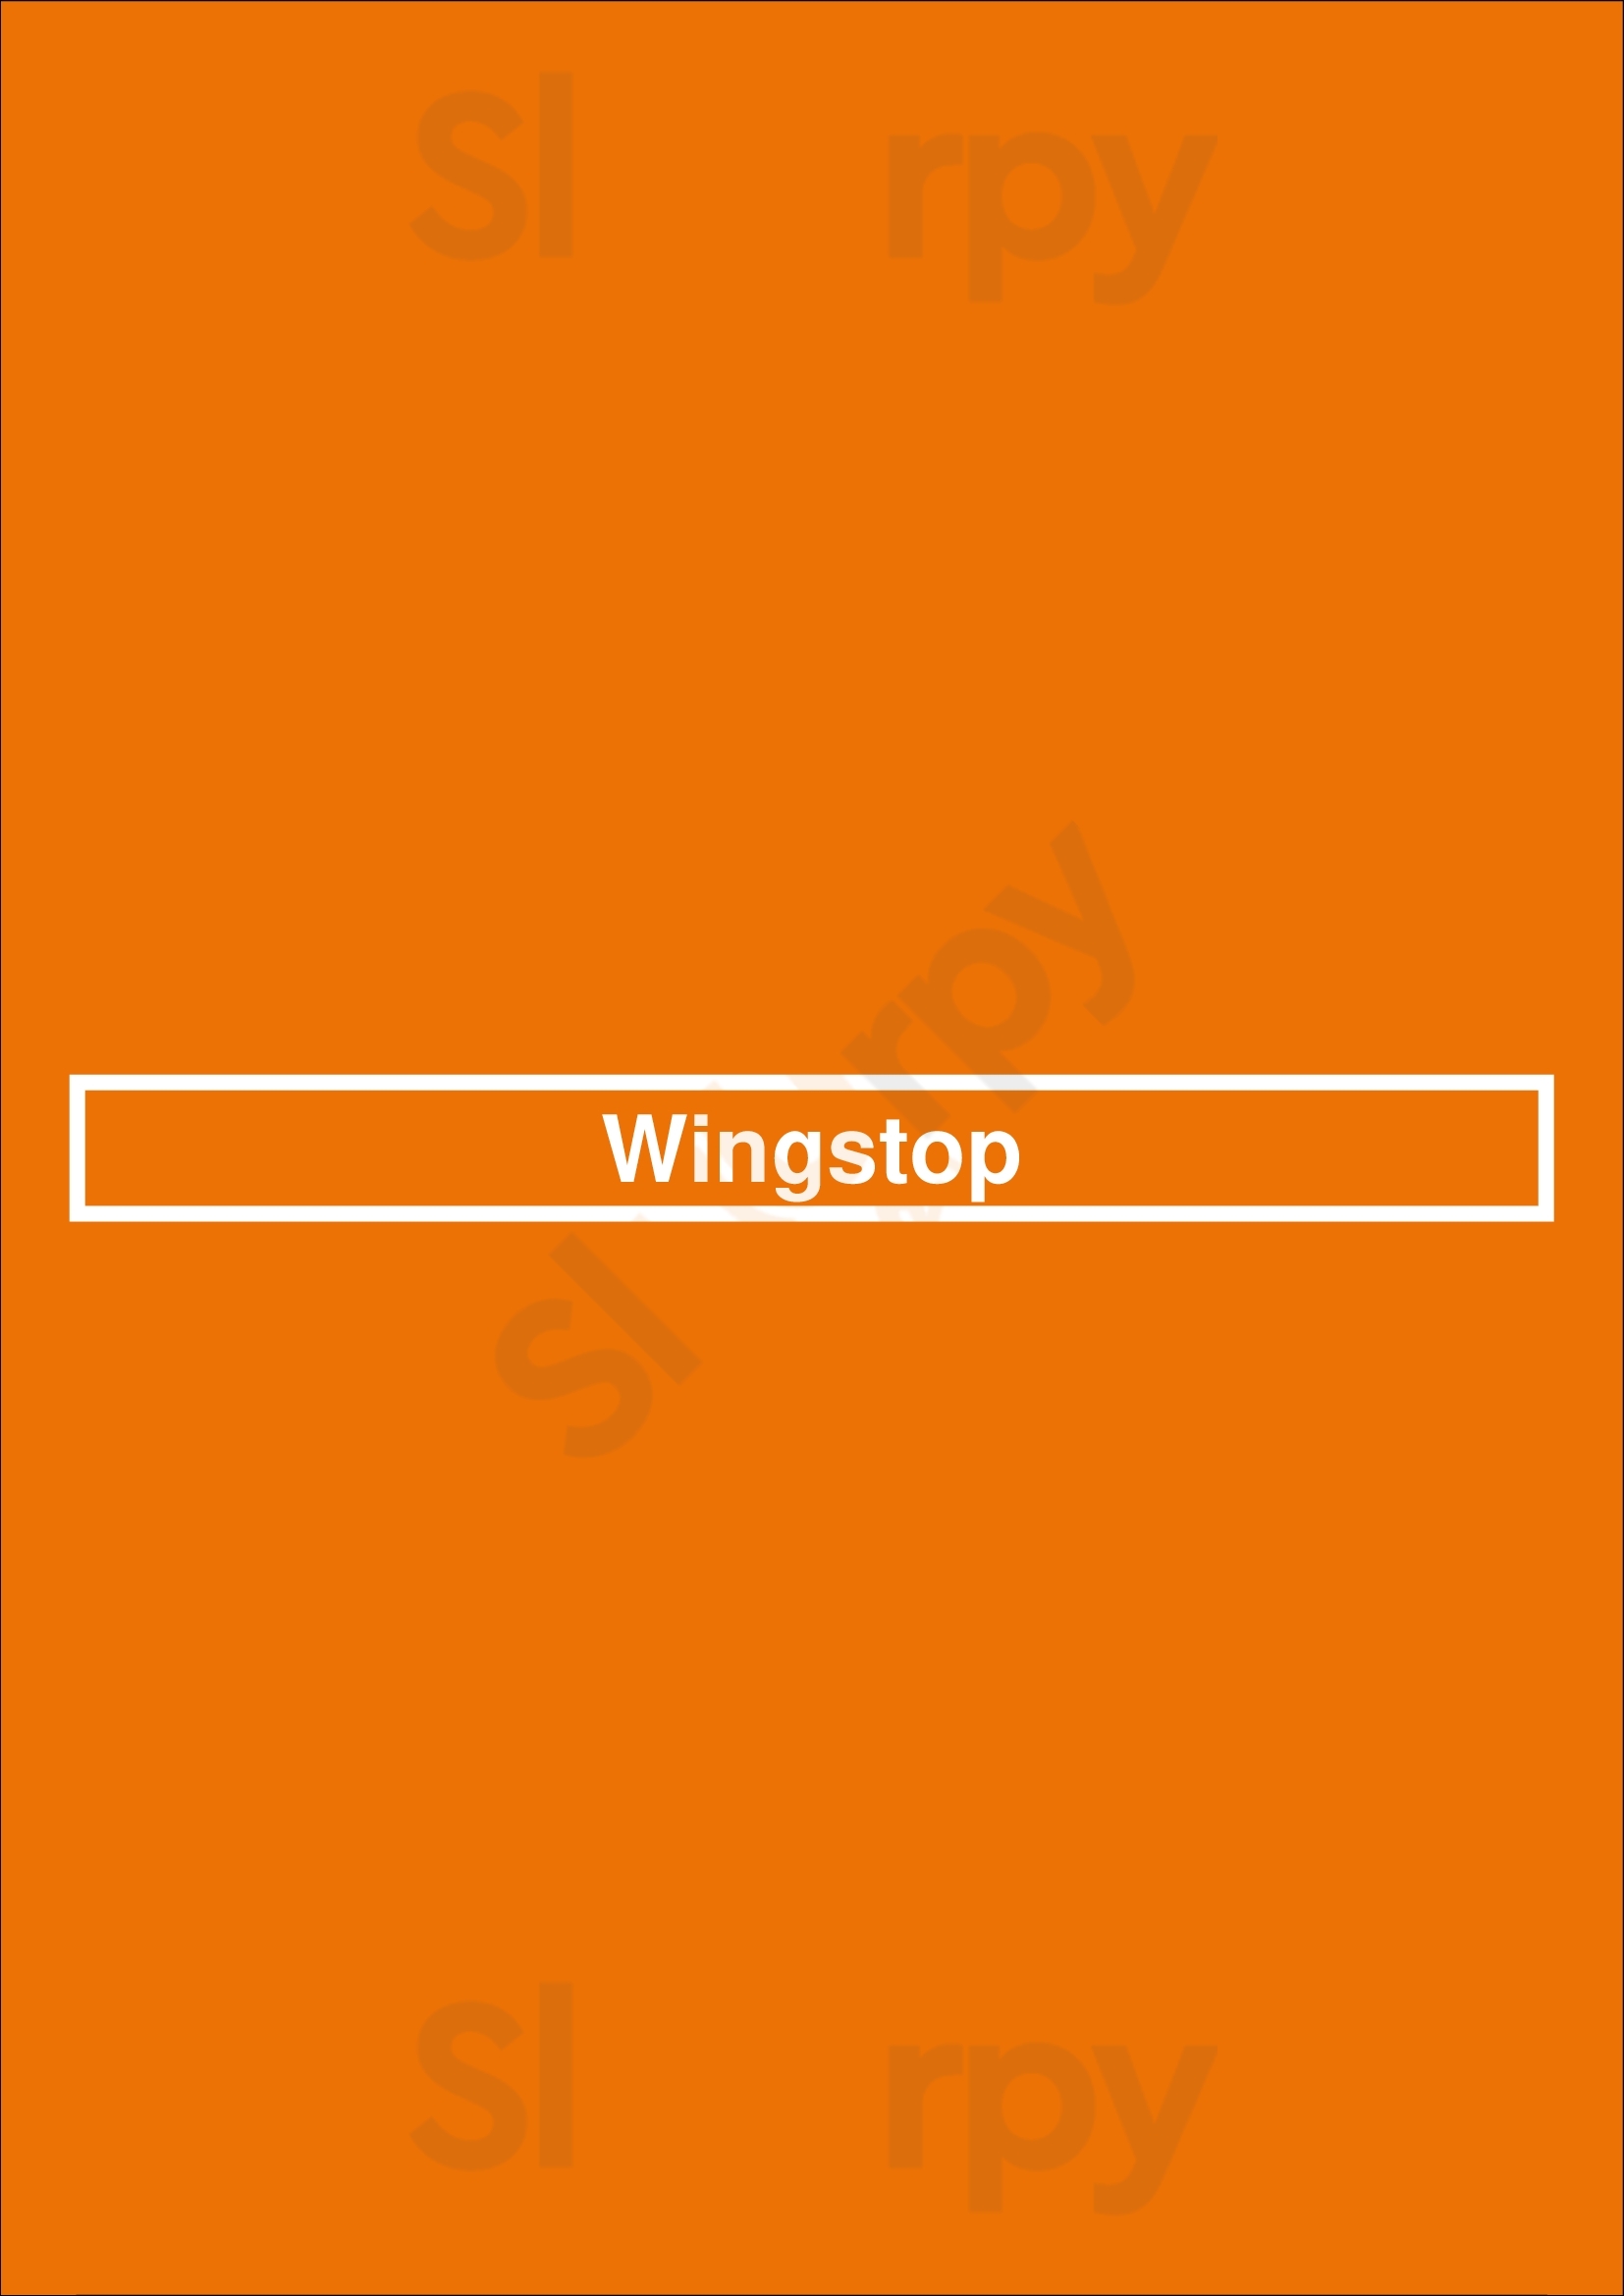 Wingstop Los Angeles Menu - 1